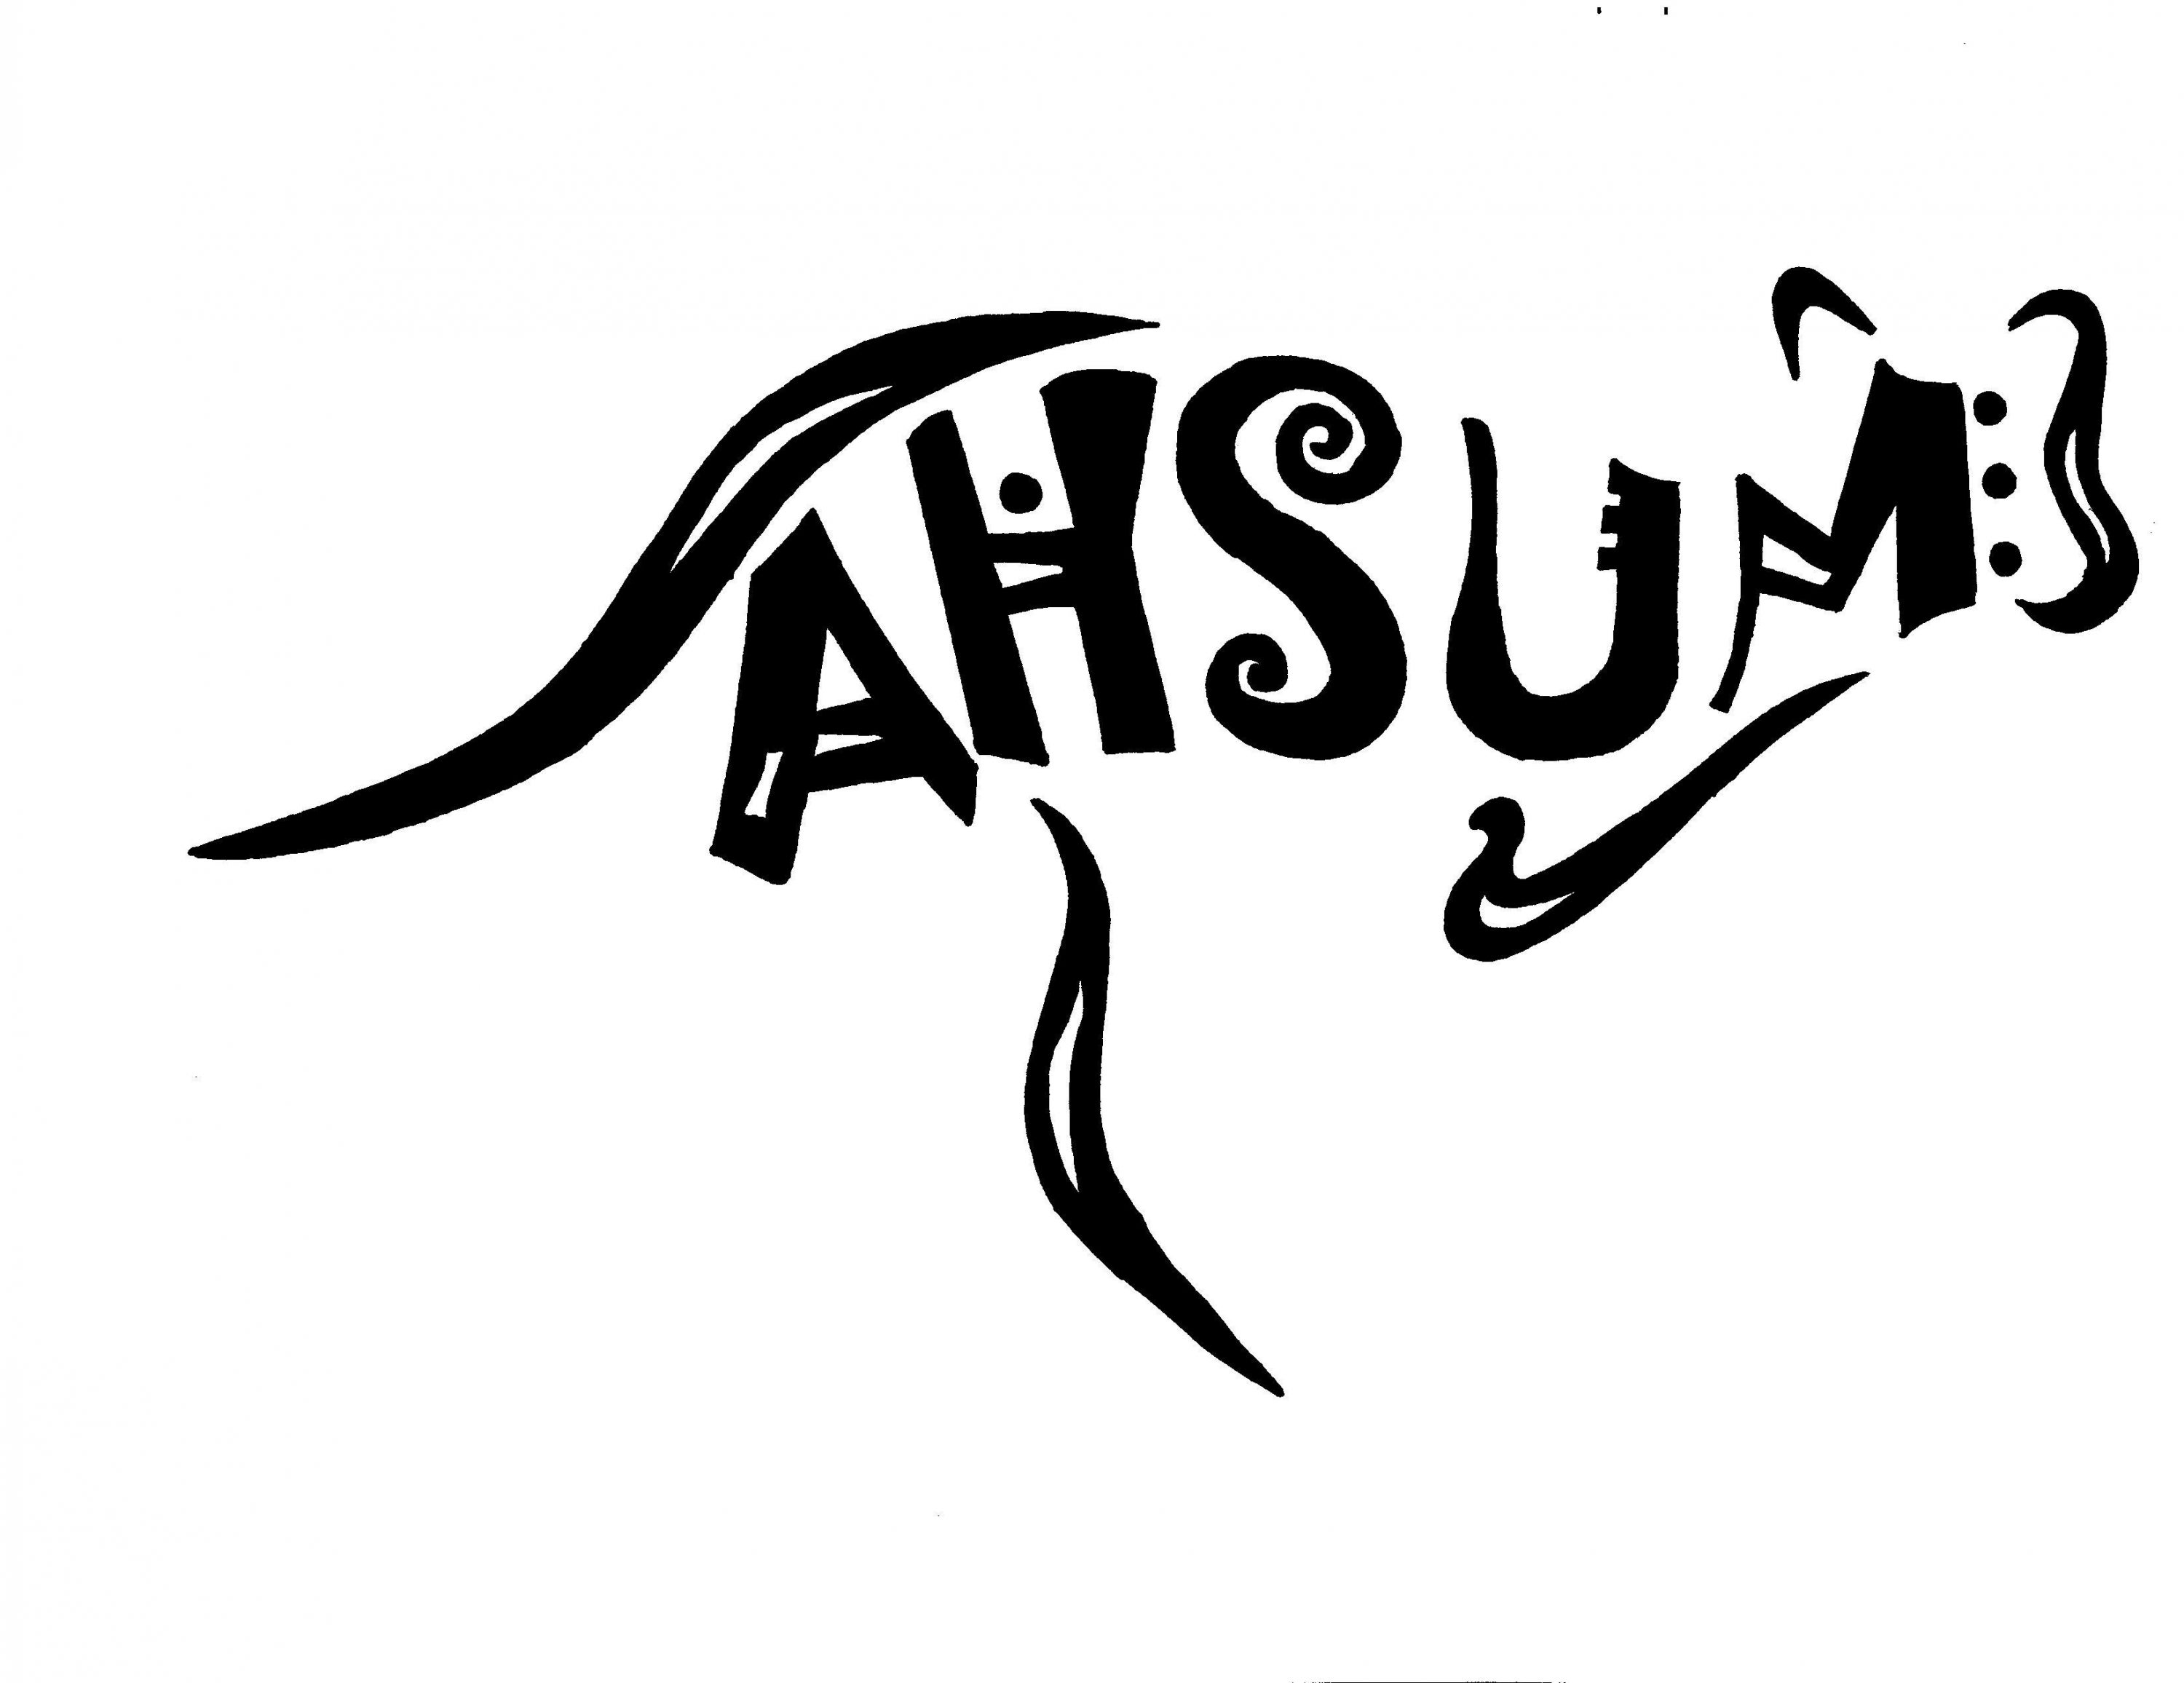 AHSUM logo